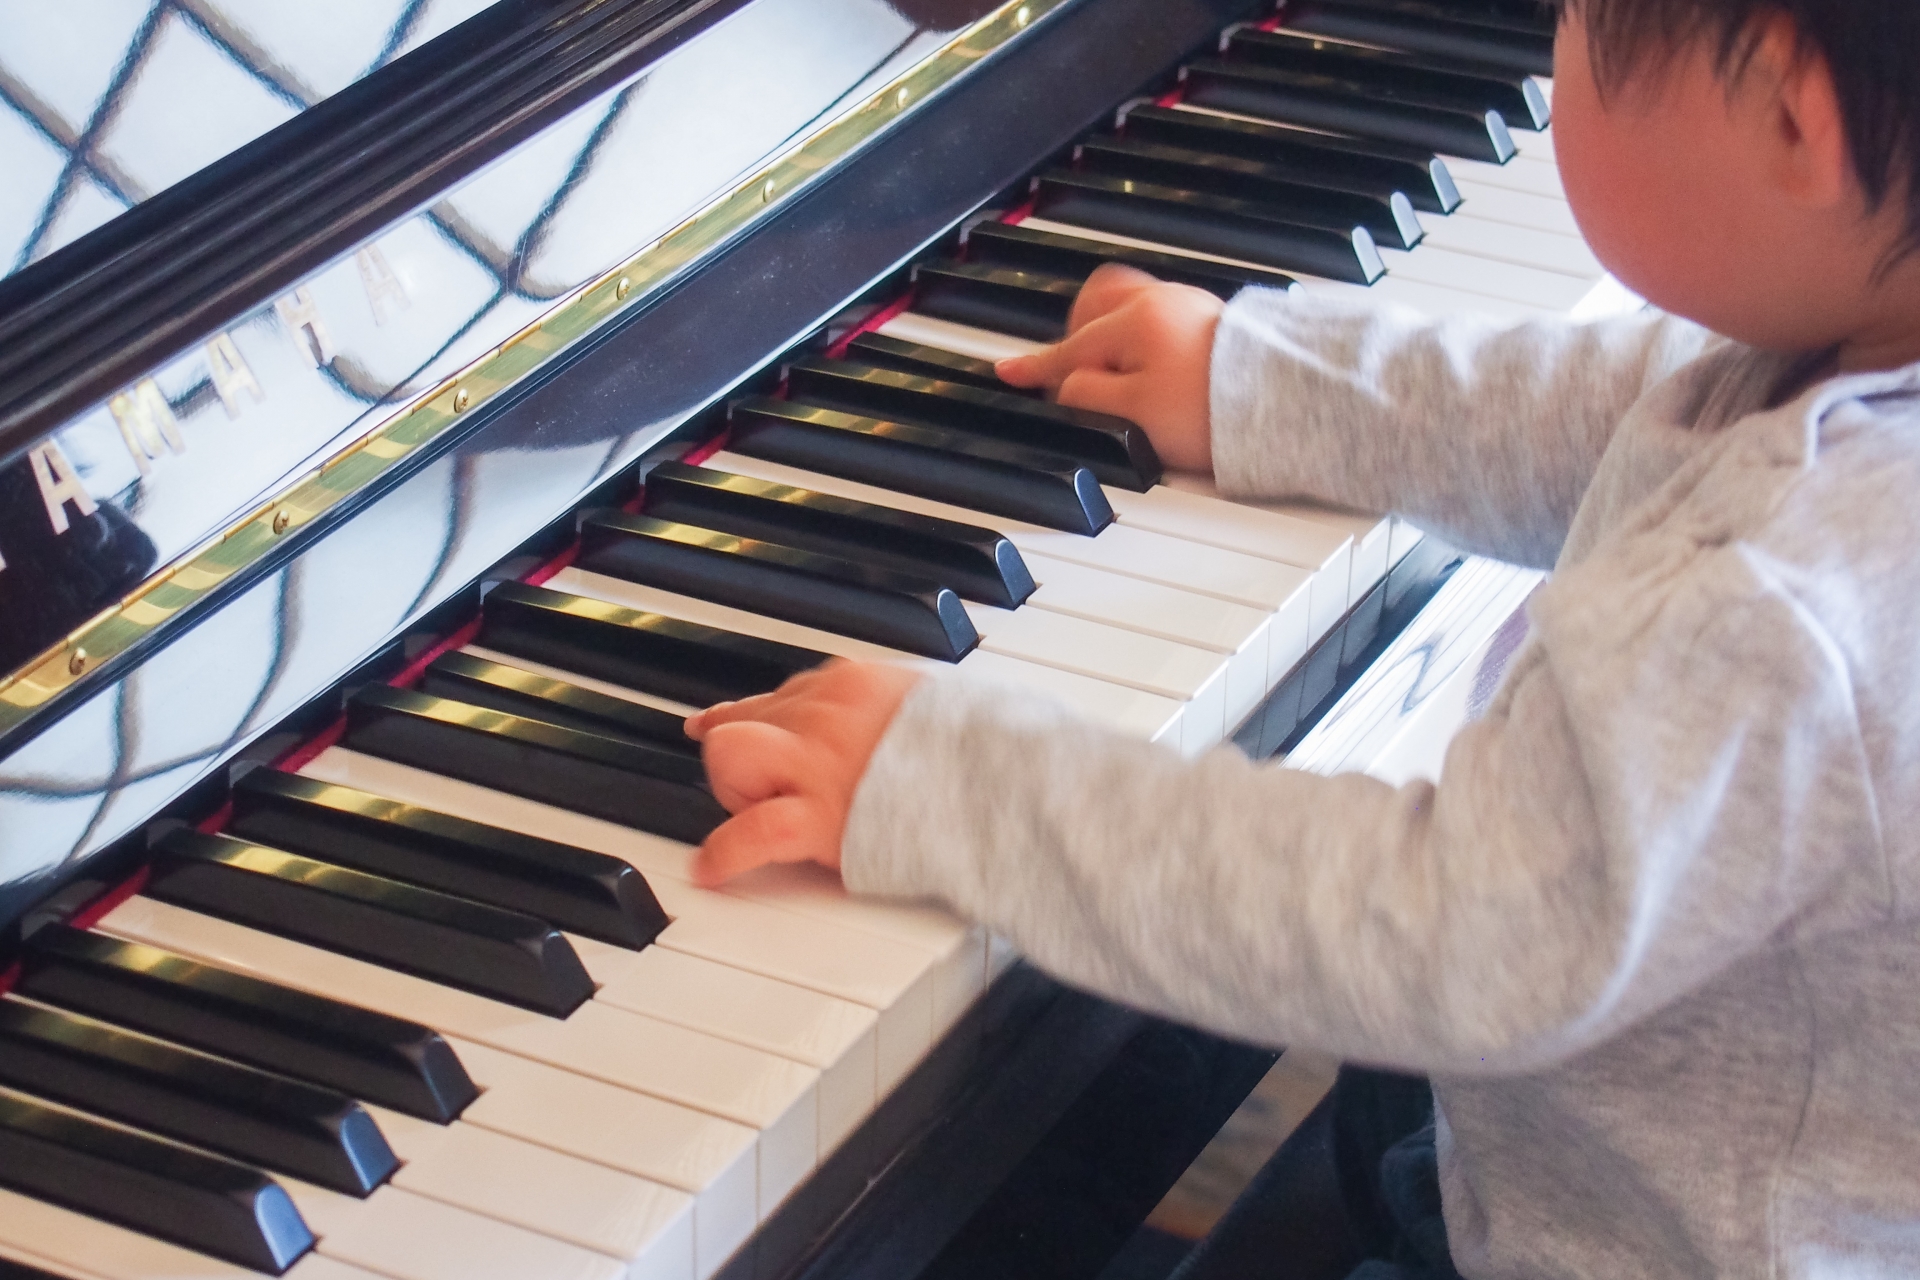 ピアノを子供が弾かない、練習しないときの対処方法やポイント